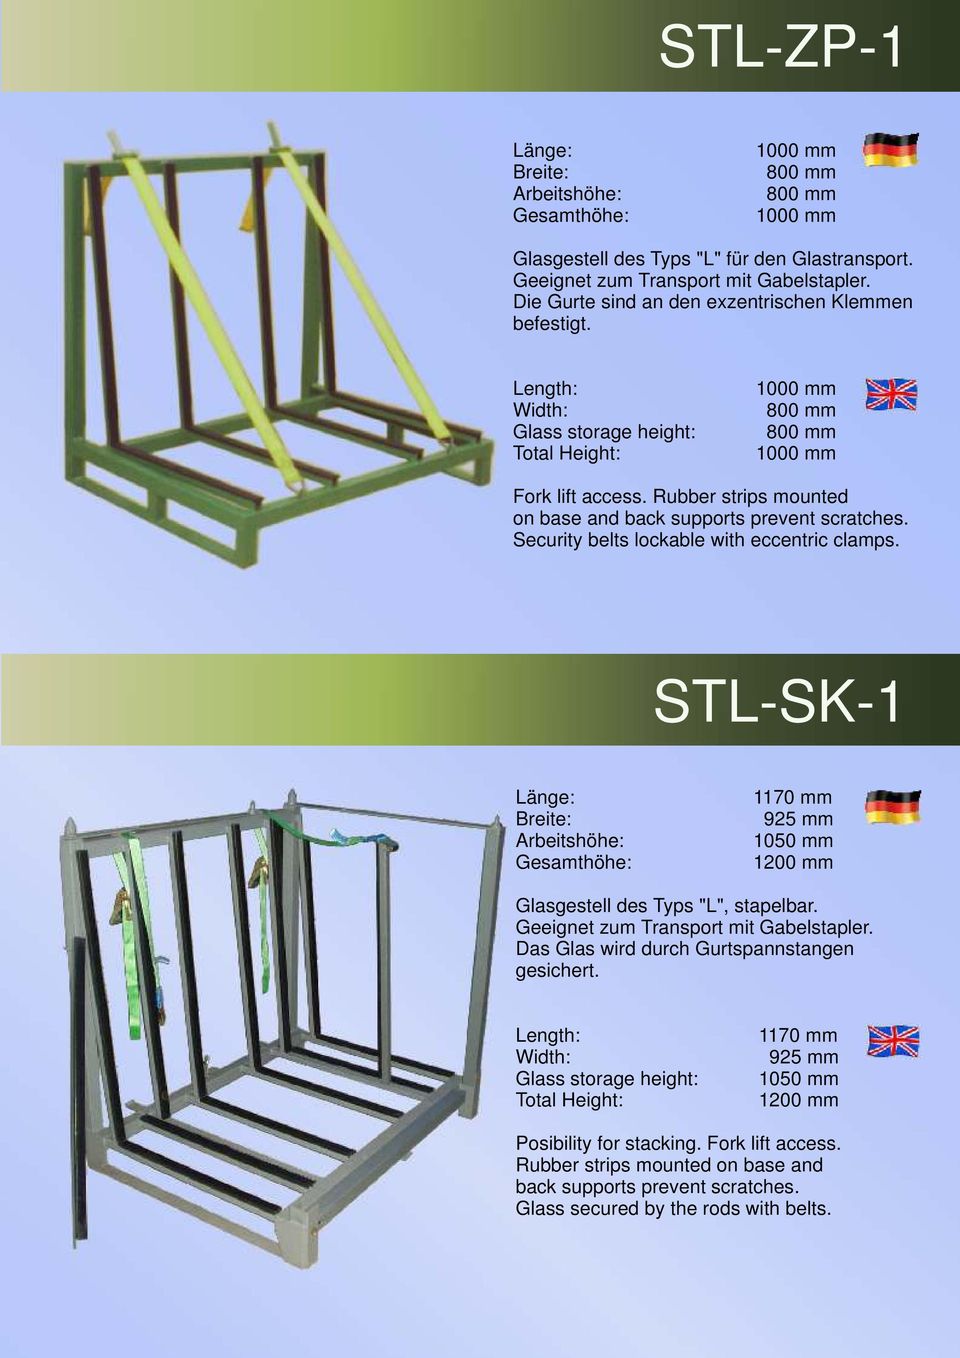 STL-SK-1 1170 mm Breite: 925 mm Arbeitshöhe: 1050 mm 1200 mm Glasgestell des Typs "L", stapelbar. Geeignet zum Transport mit Gabelstapler. Das Glas wird durch Gurtspannstangen gesichert.